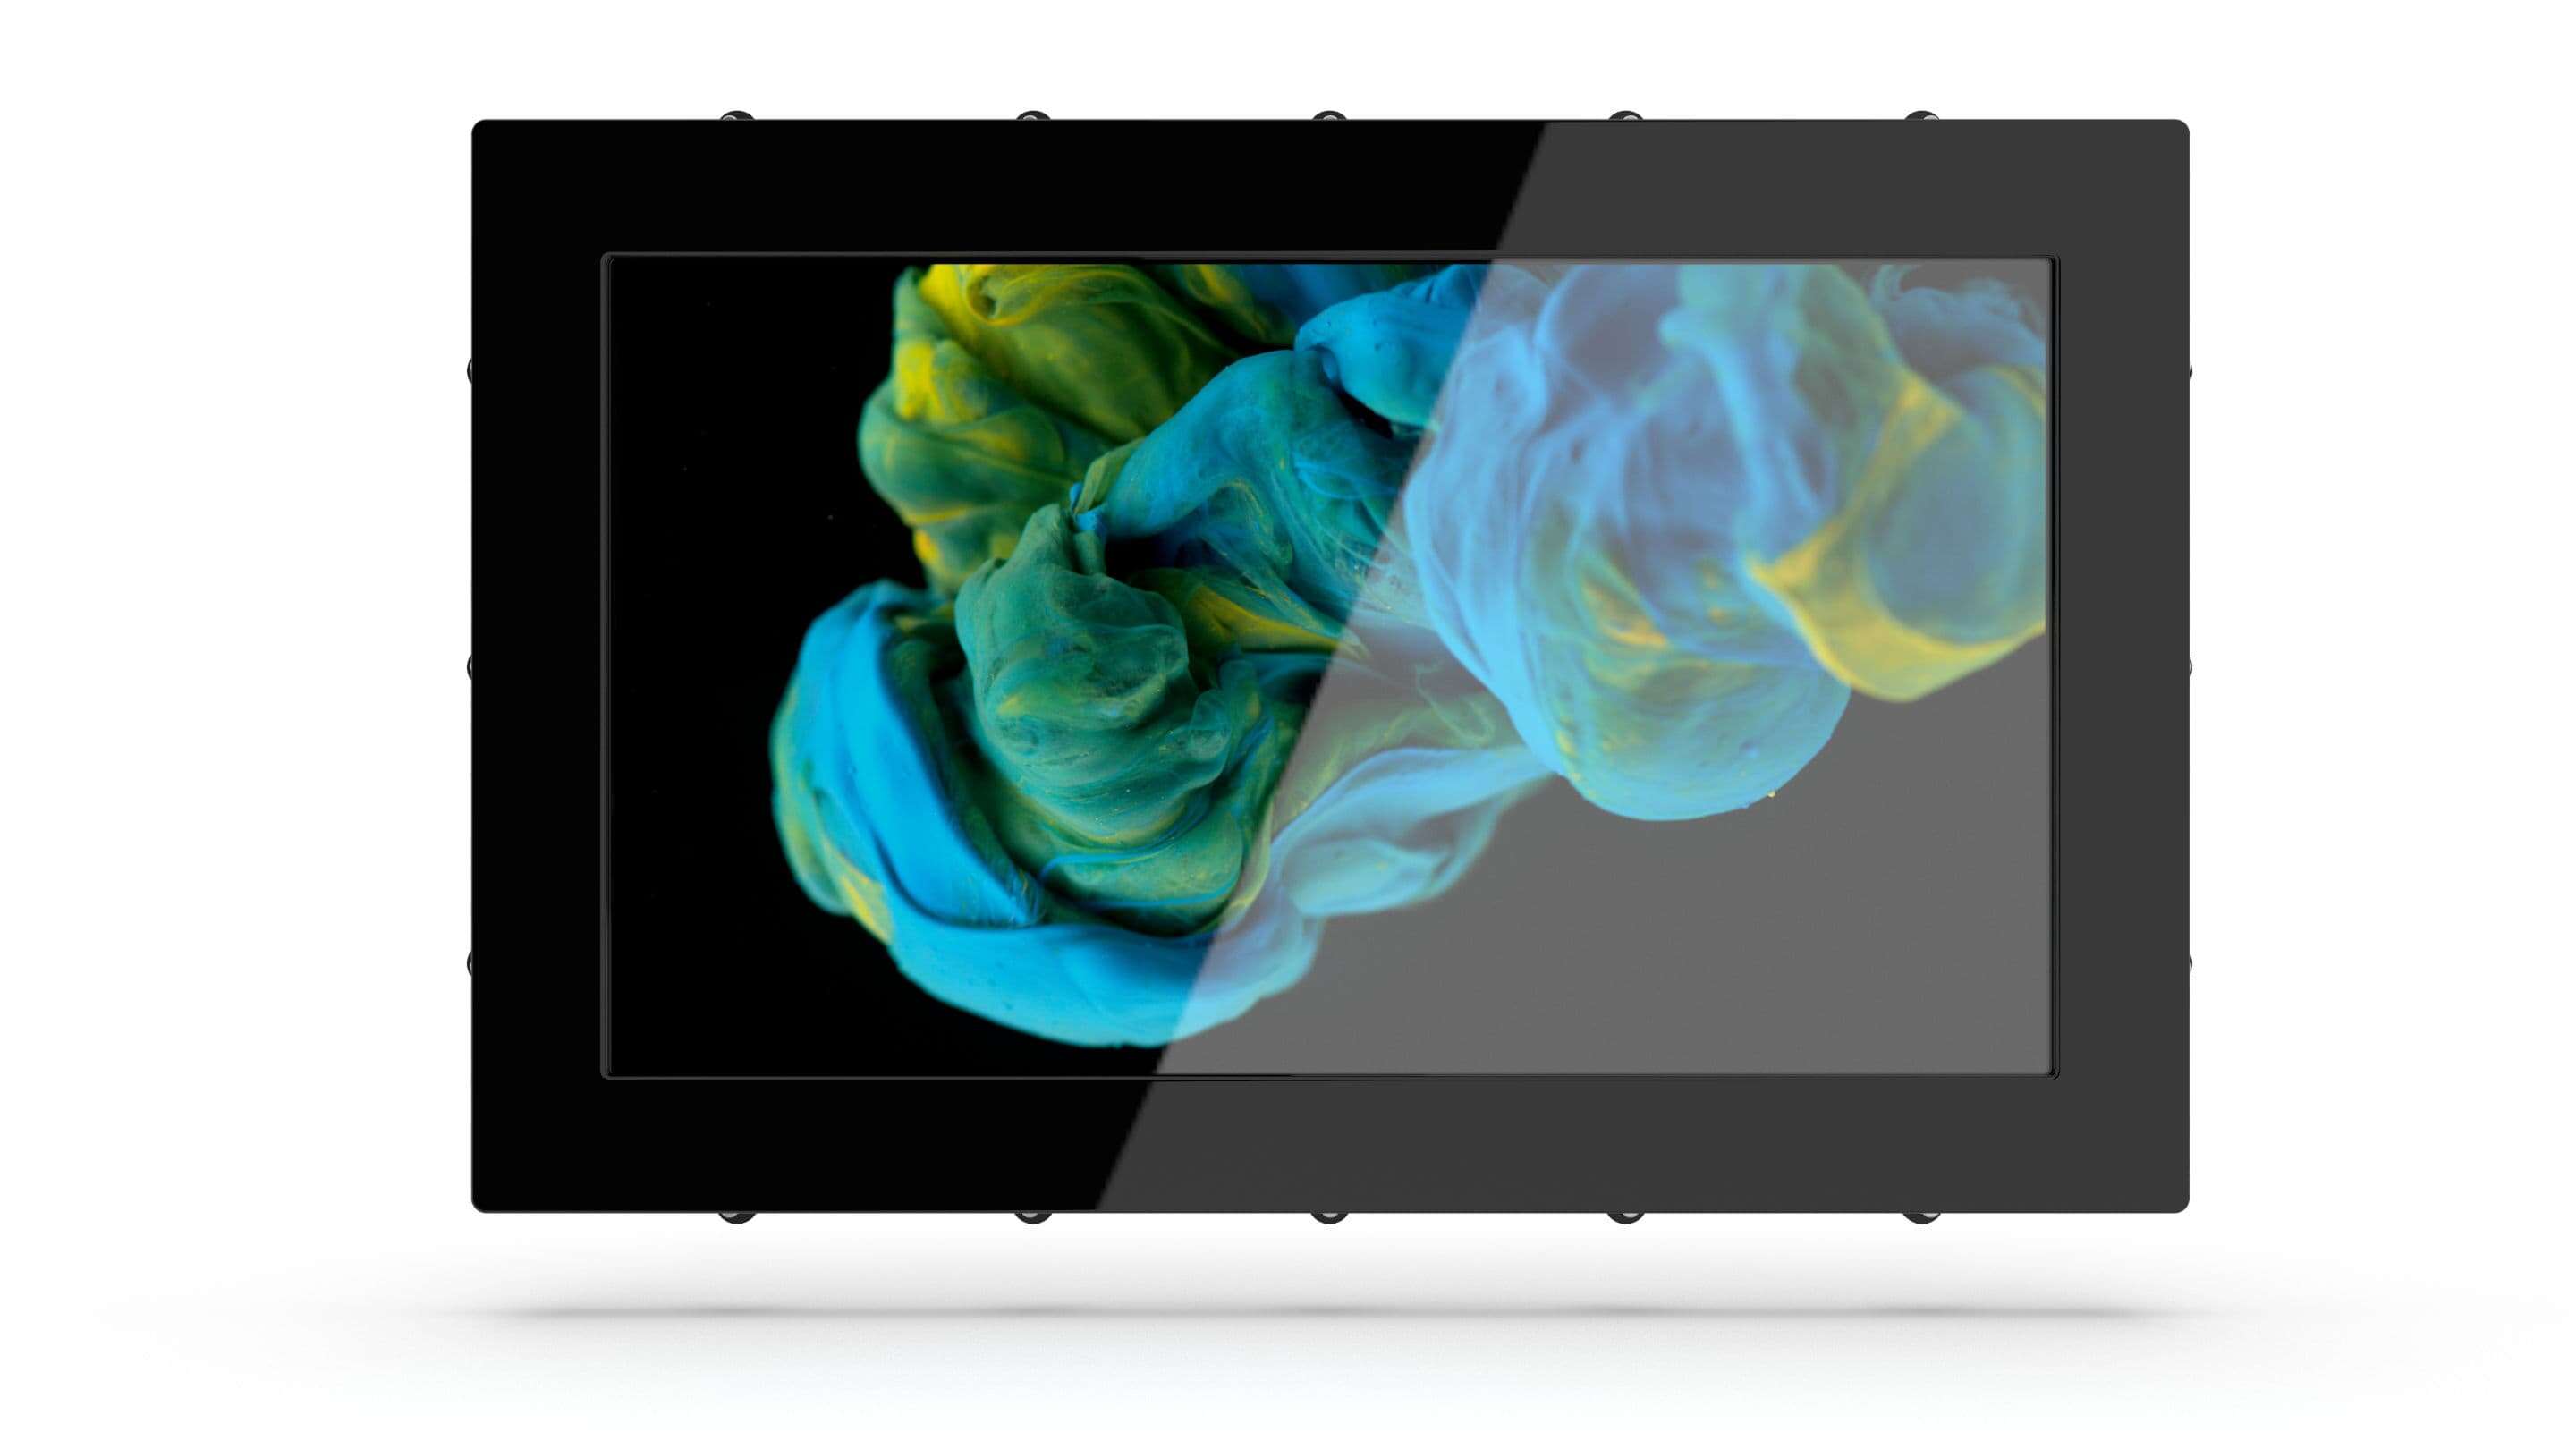 Industrial Monitor - Industrial Monitor une tablette noire avec un écran affichant de la peinture bleue et jaune